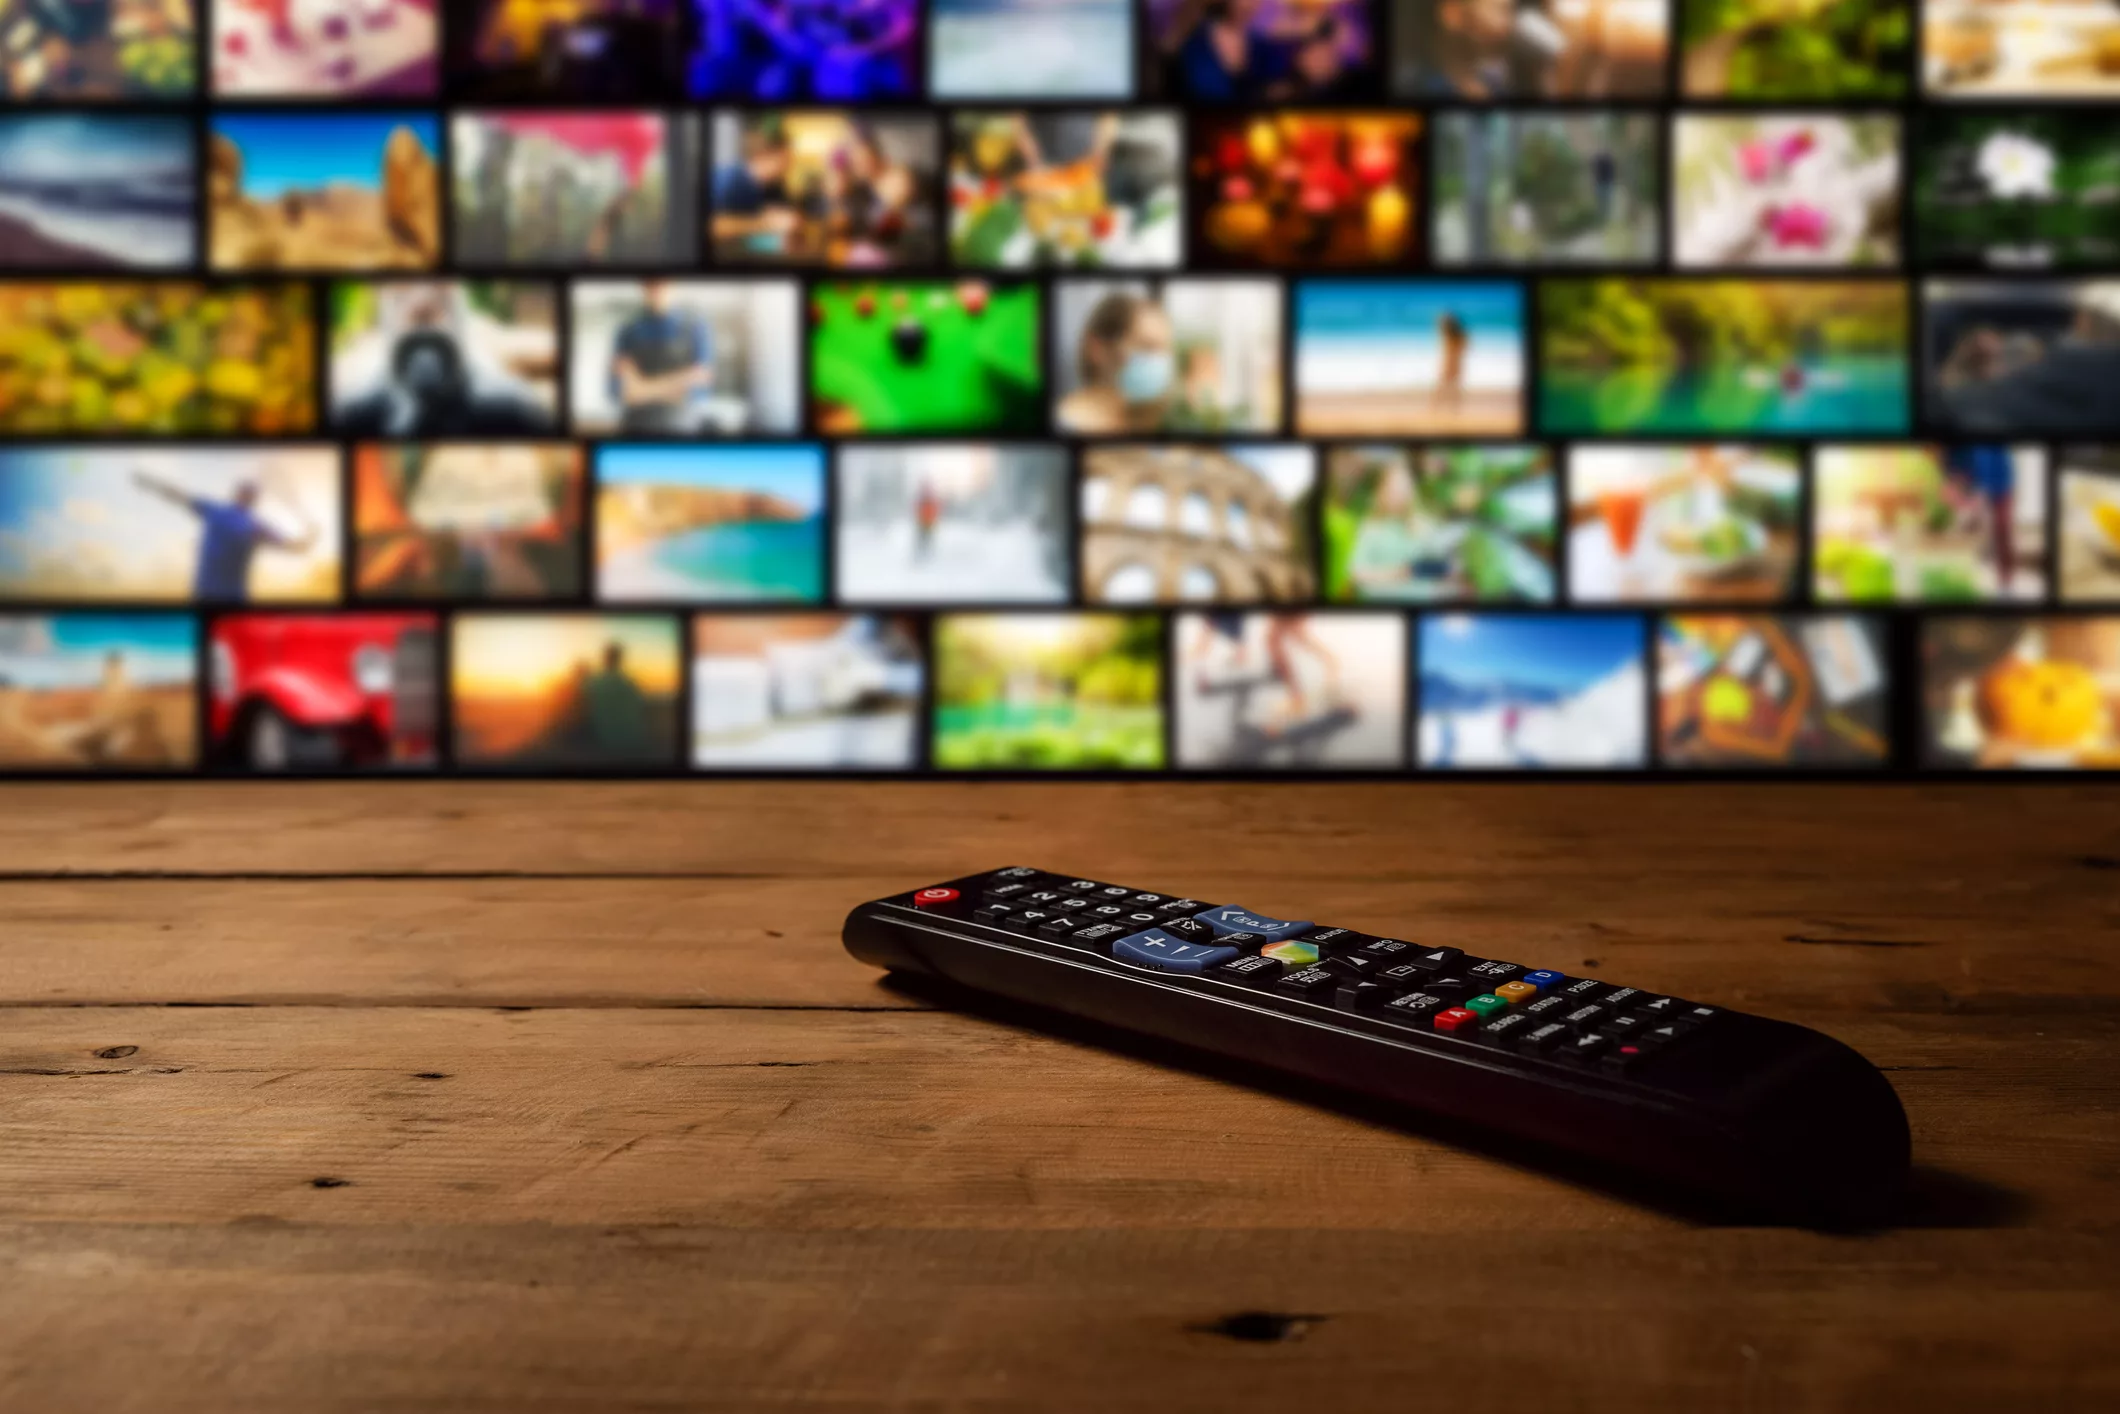 IAB Brasil revela que 6 em cada 10 usuários acessam a internet pela televisão